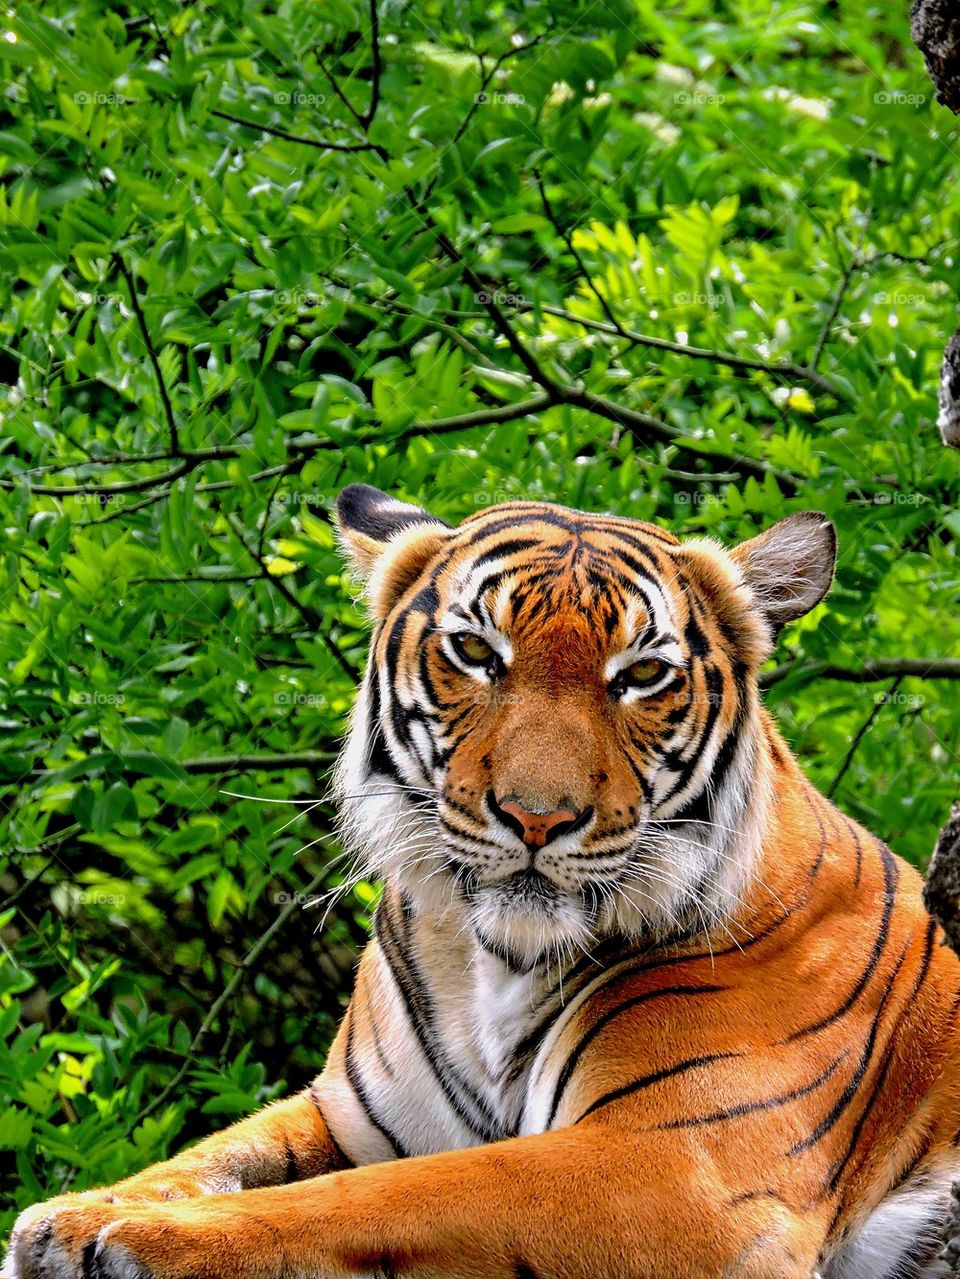 Tiger. 